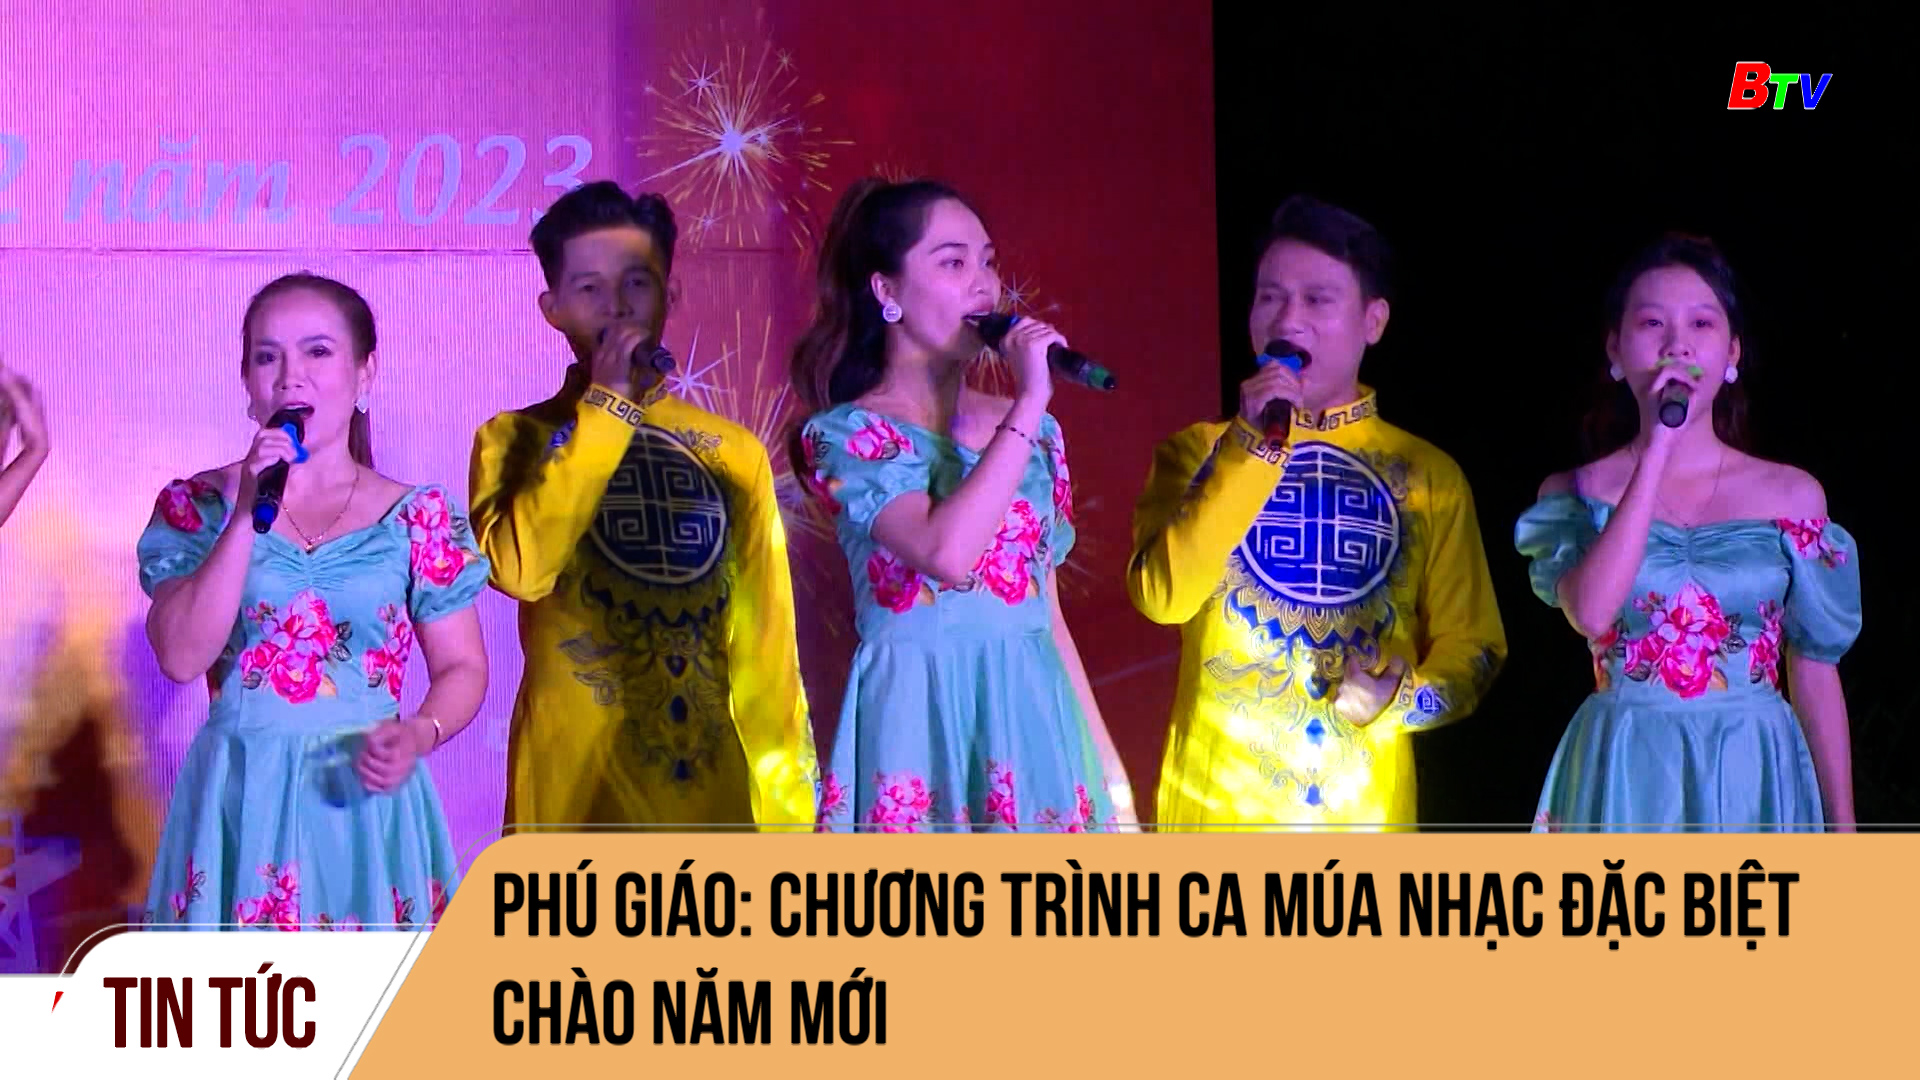 Phú Giáo: Chương trình ca múa nhạc đặc biệt chào năm mới